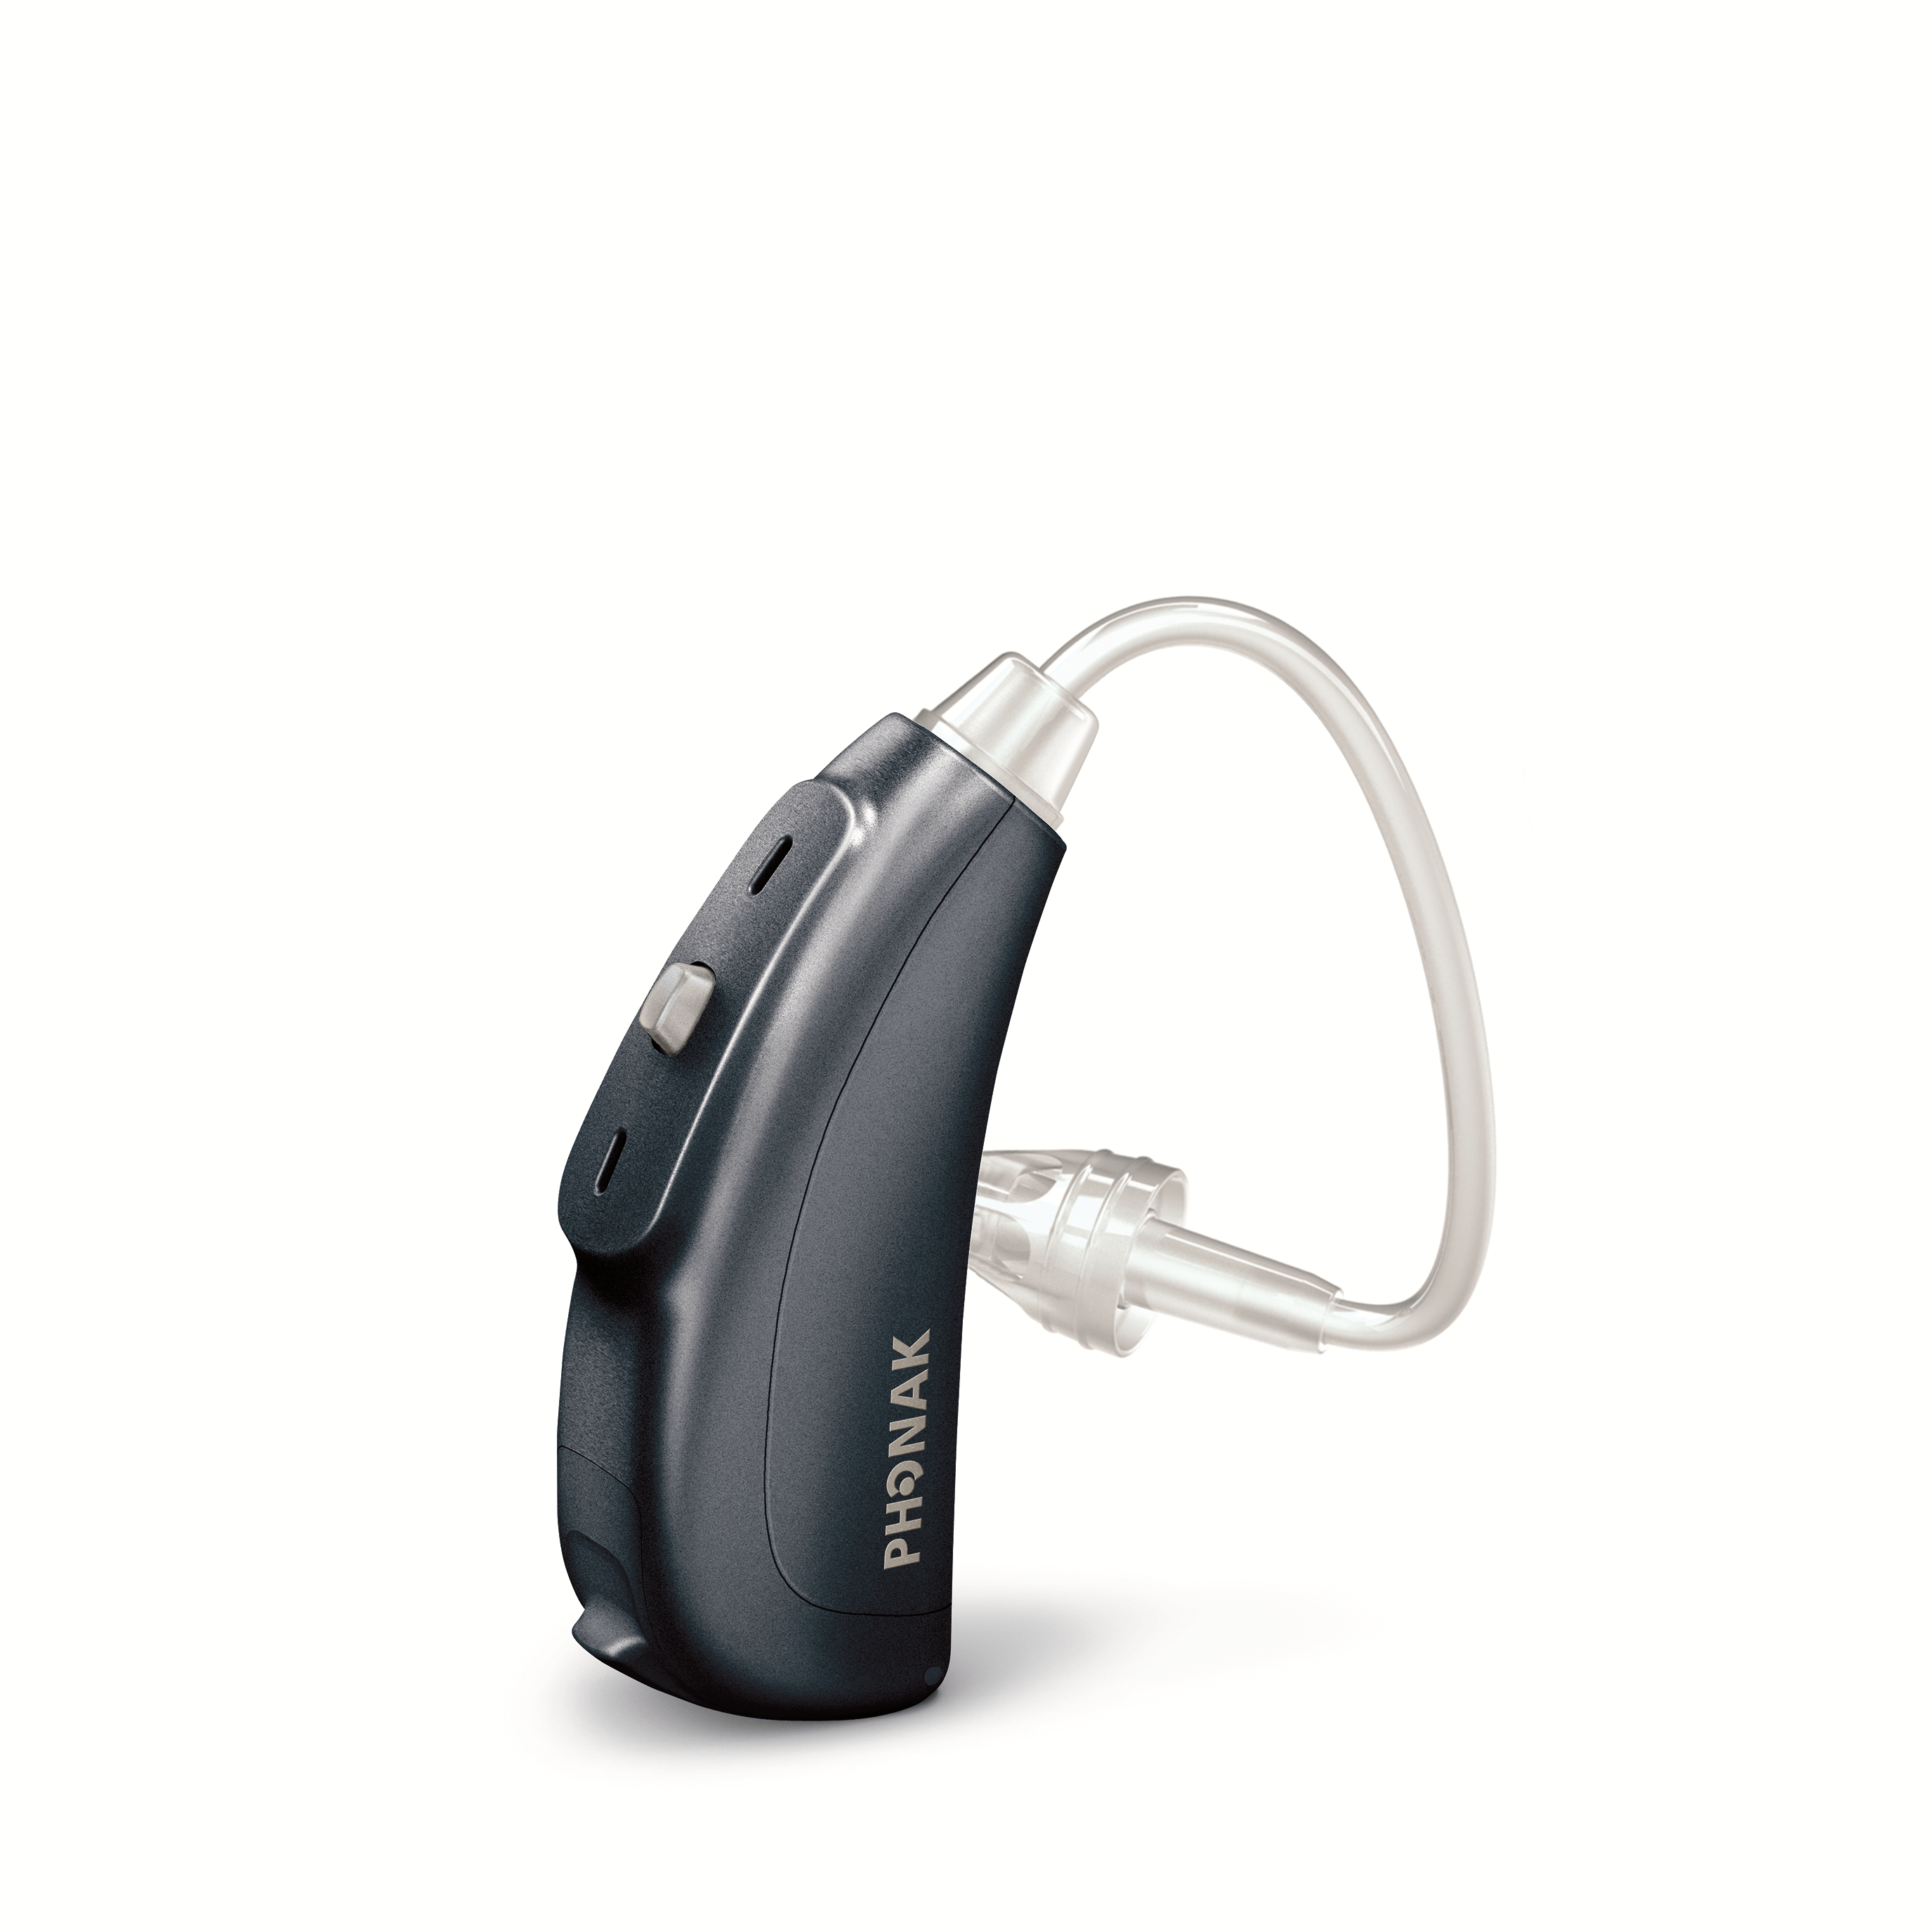 最近増加する補聴器メーカー直営店のメリット・デメリット～元補聴器メーカー出身だからわかること～